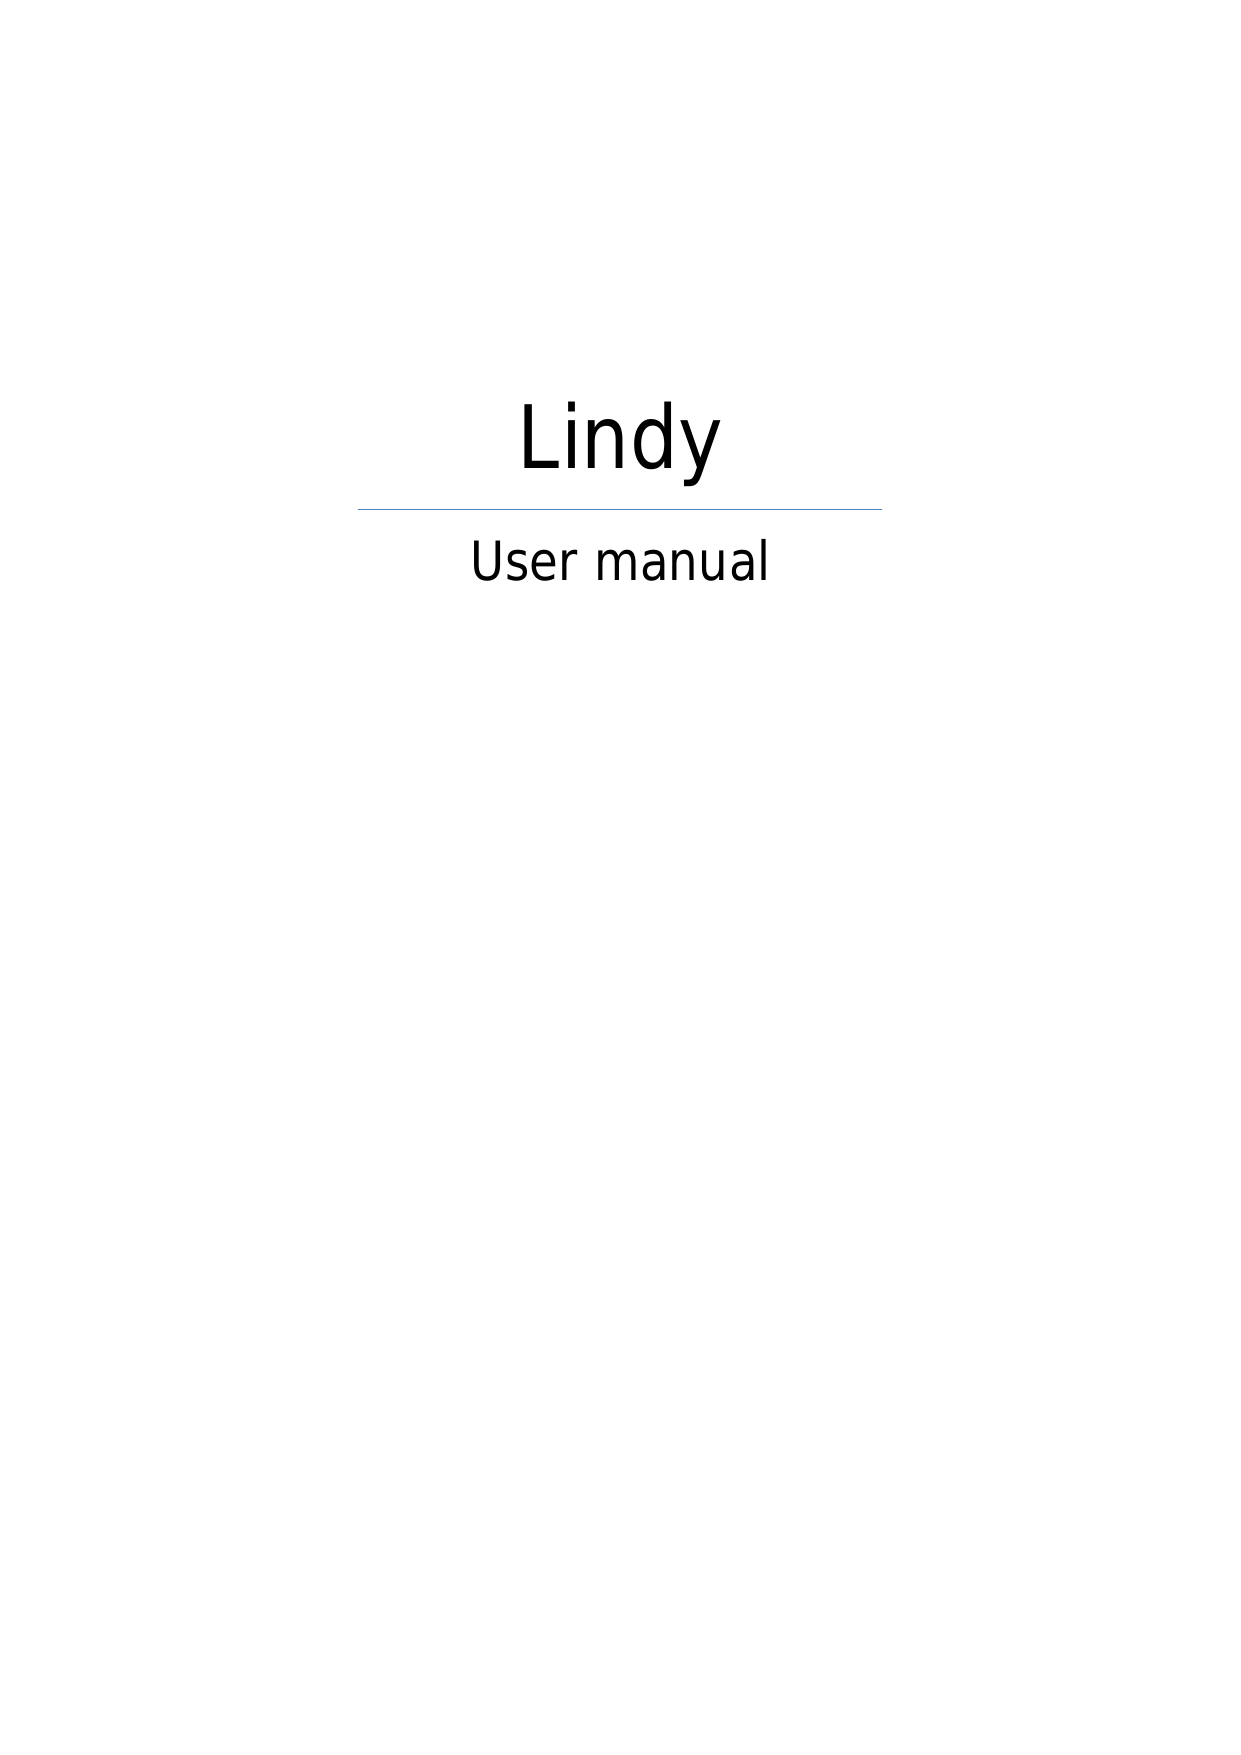 LindyUser manual    